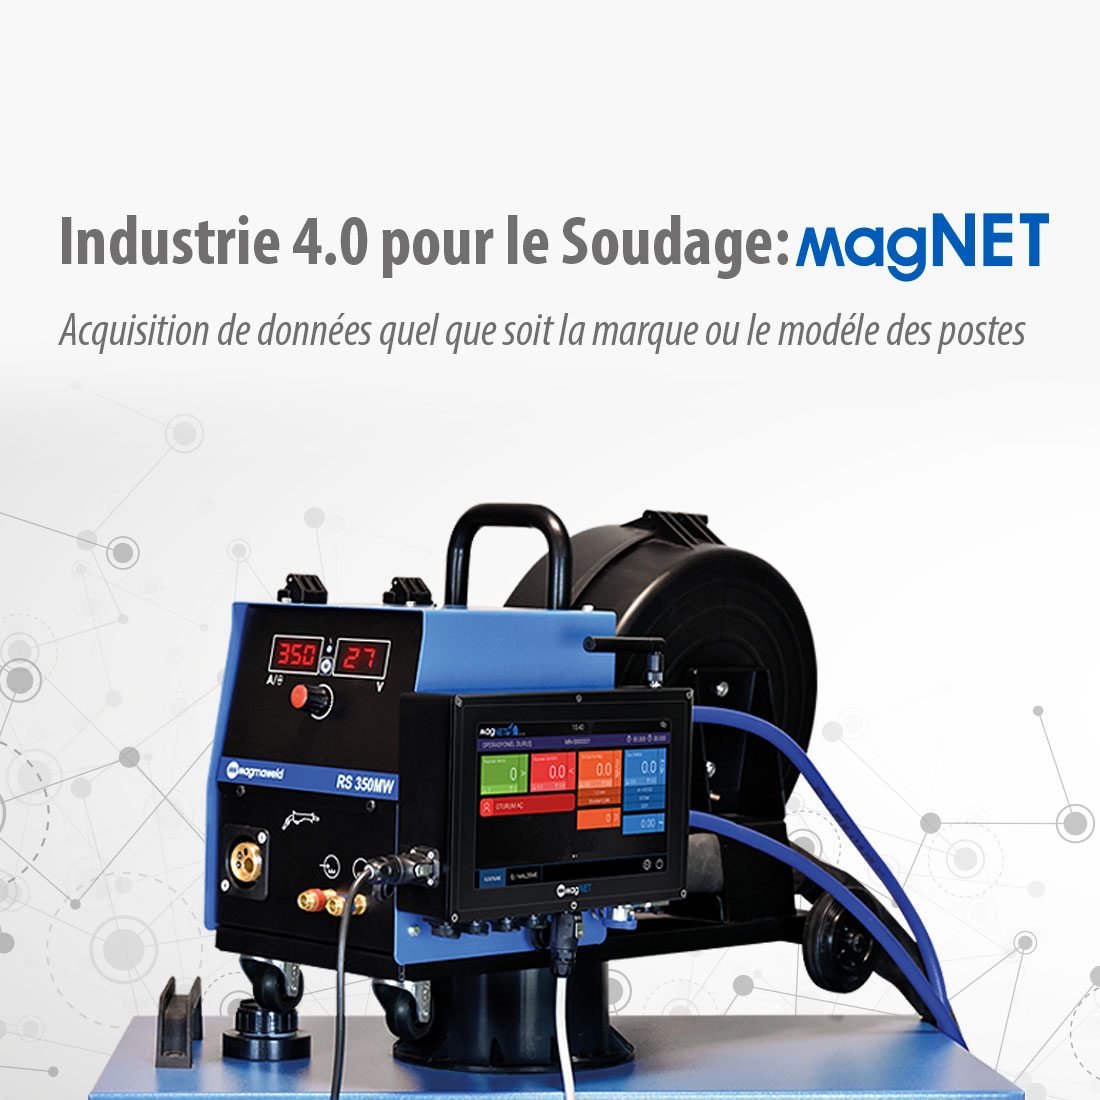 Industrie 4.0 pour le Soudage: magNET